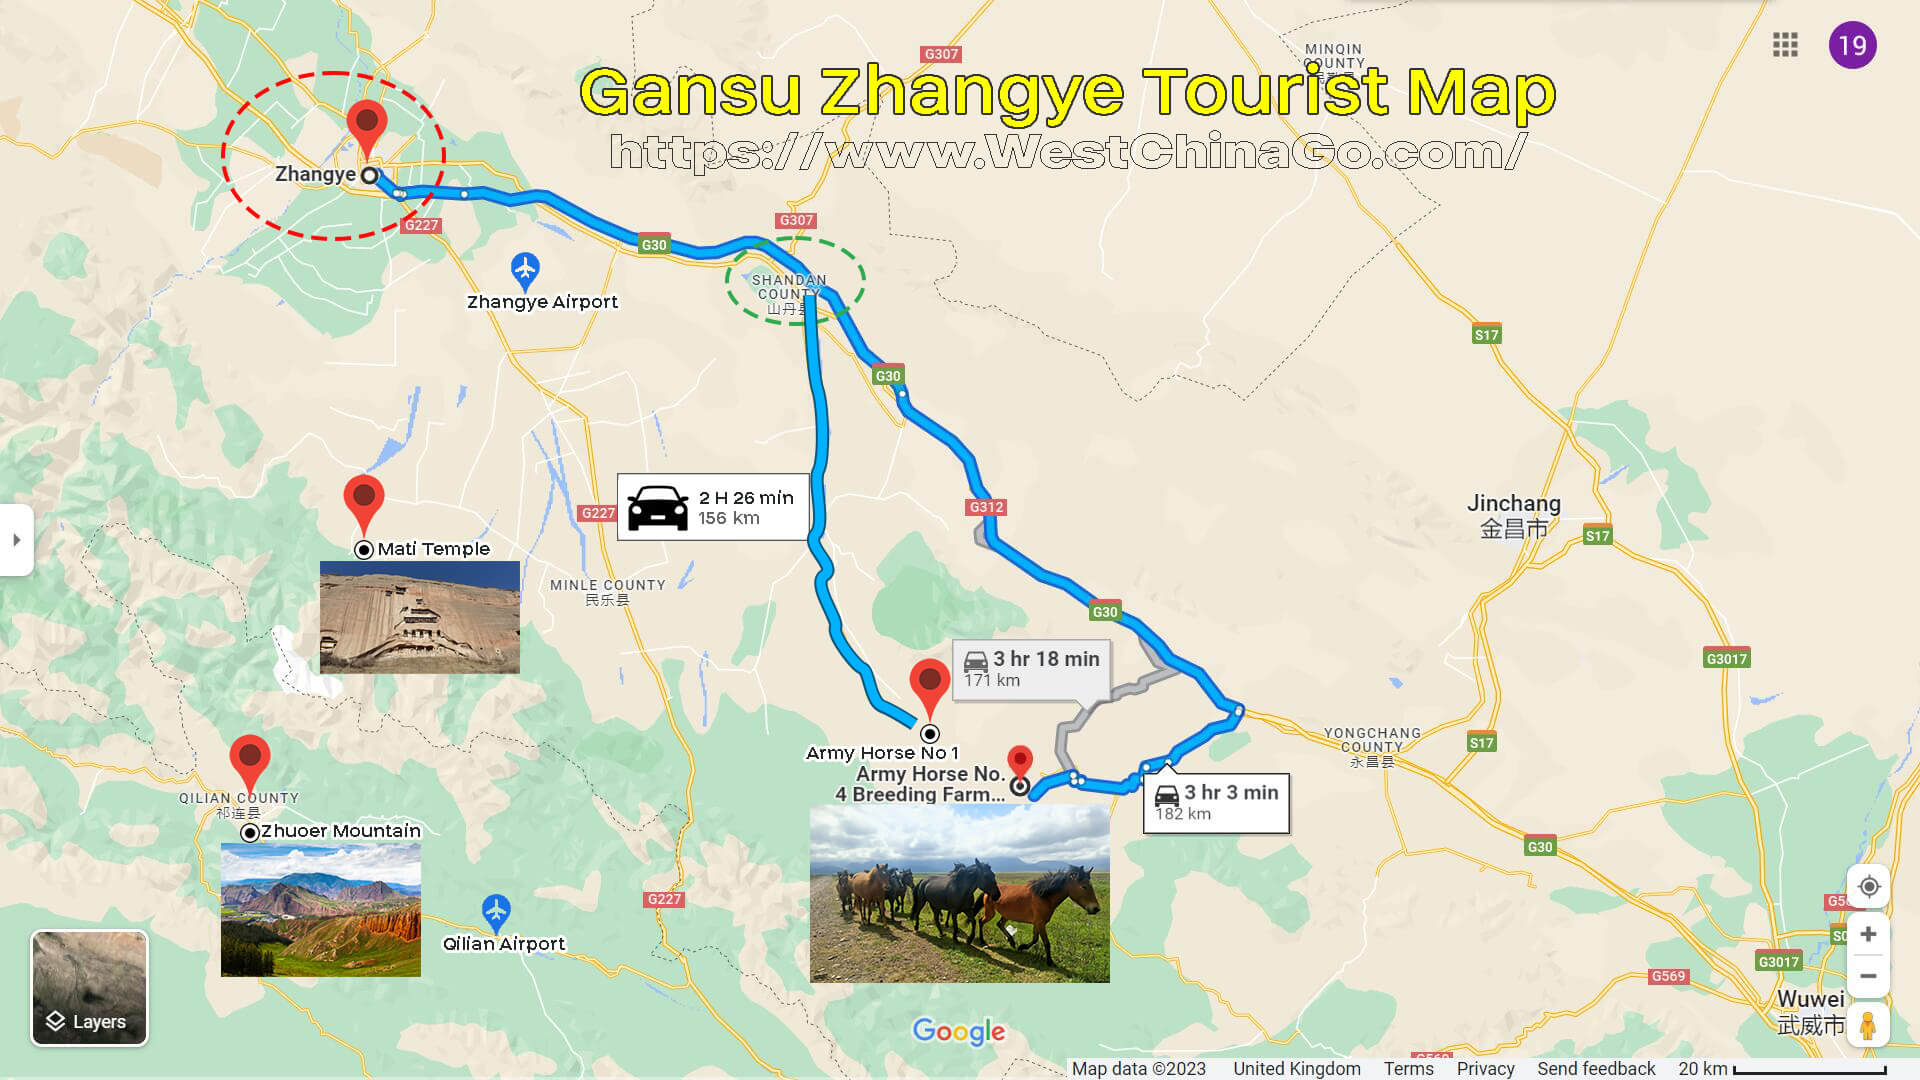 QiLian Zhuoer Mountain Tourist Map